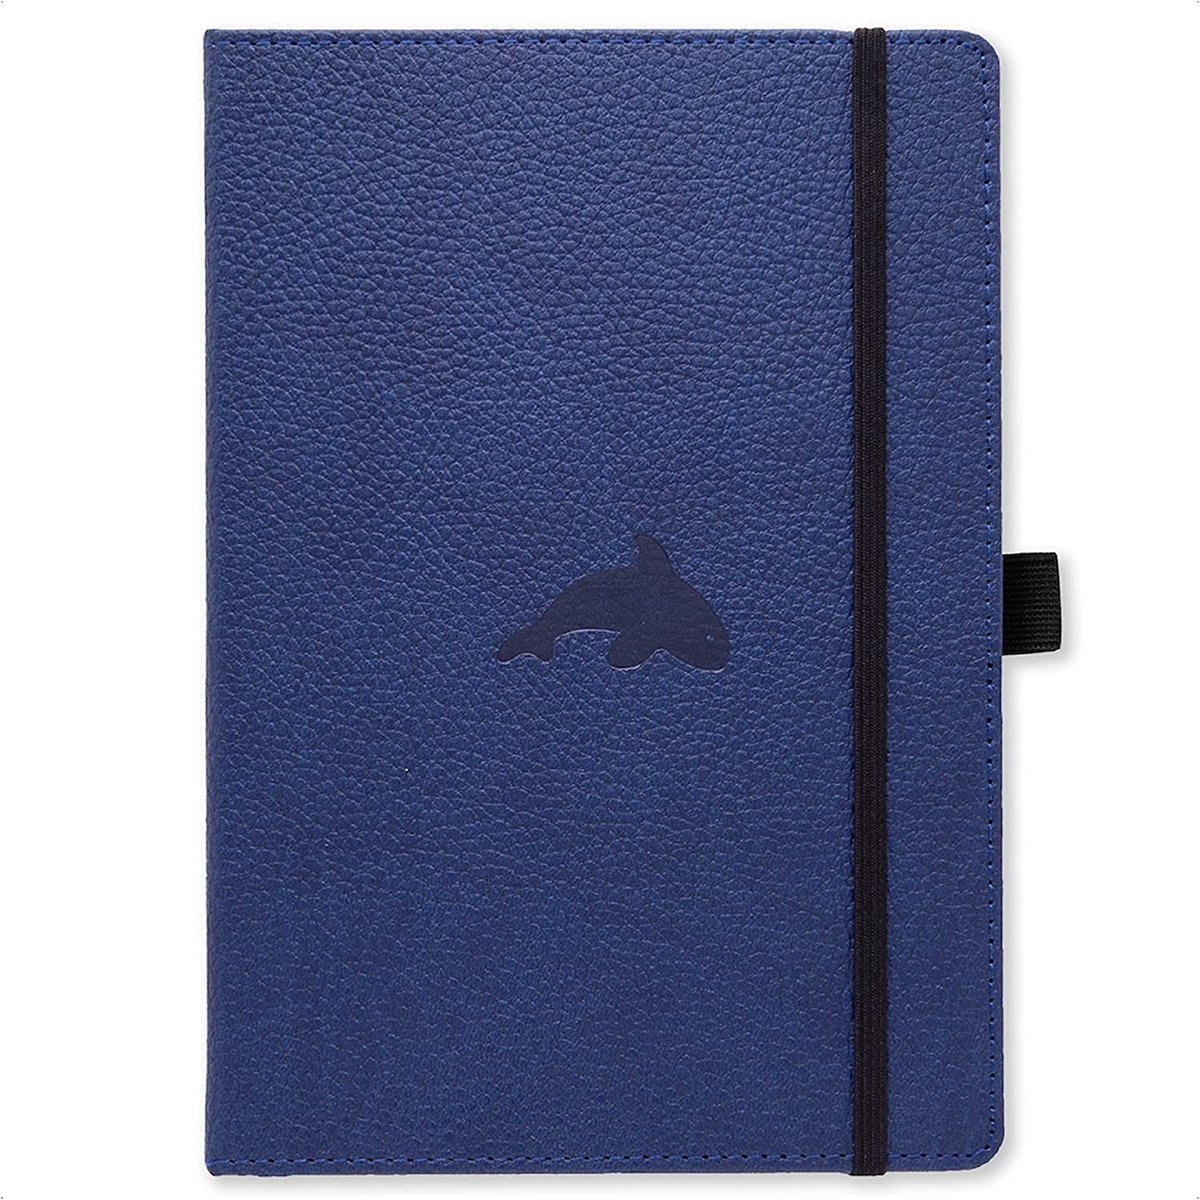 Dingbats* Wildlife A4 Notitieboek - Blue Whale Raster - Bullet Journal met 100 gsm Inktvrij Papier - Schetsboek met Harde Kaft, Elastische Sluiting en Bladwijzer